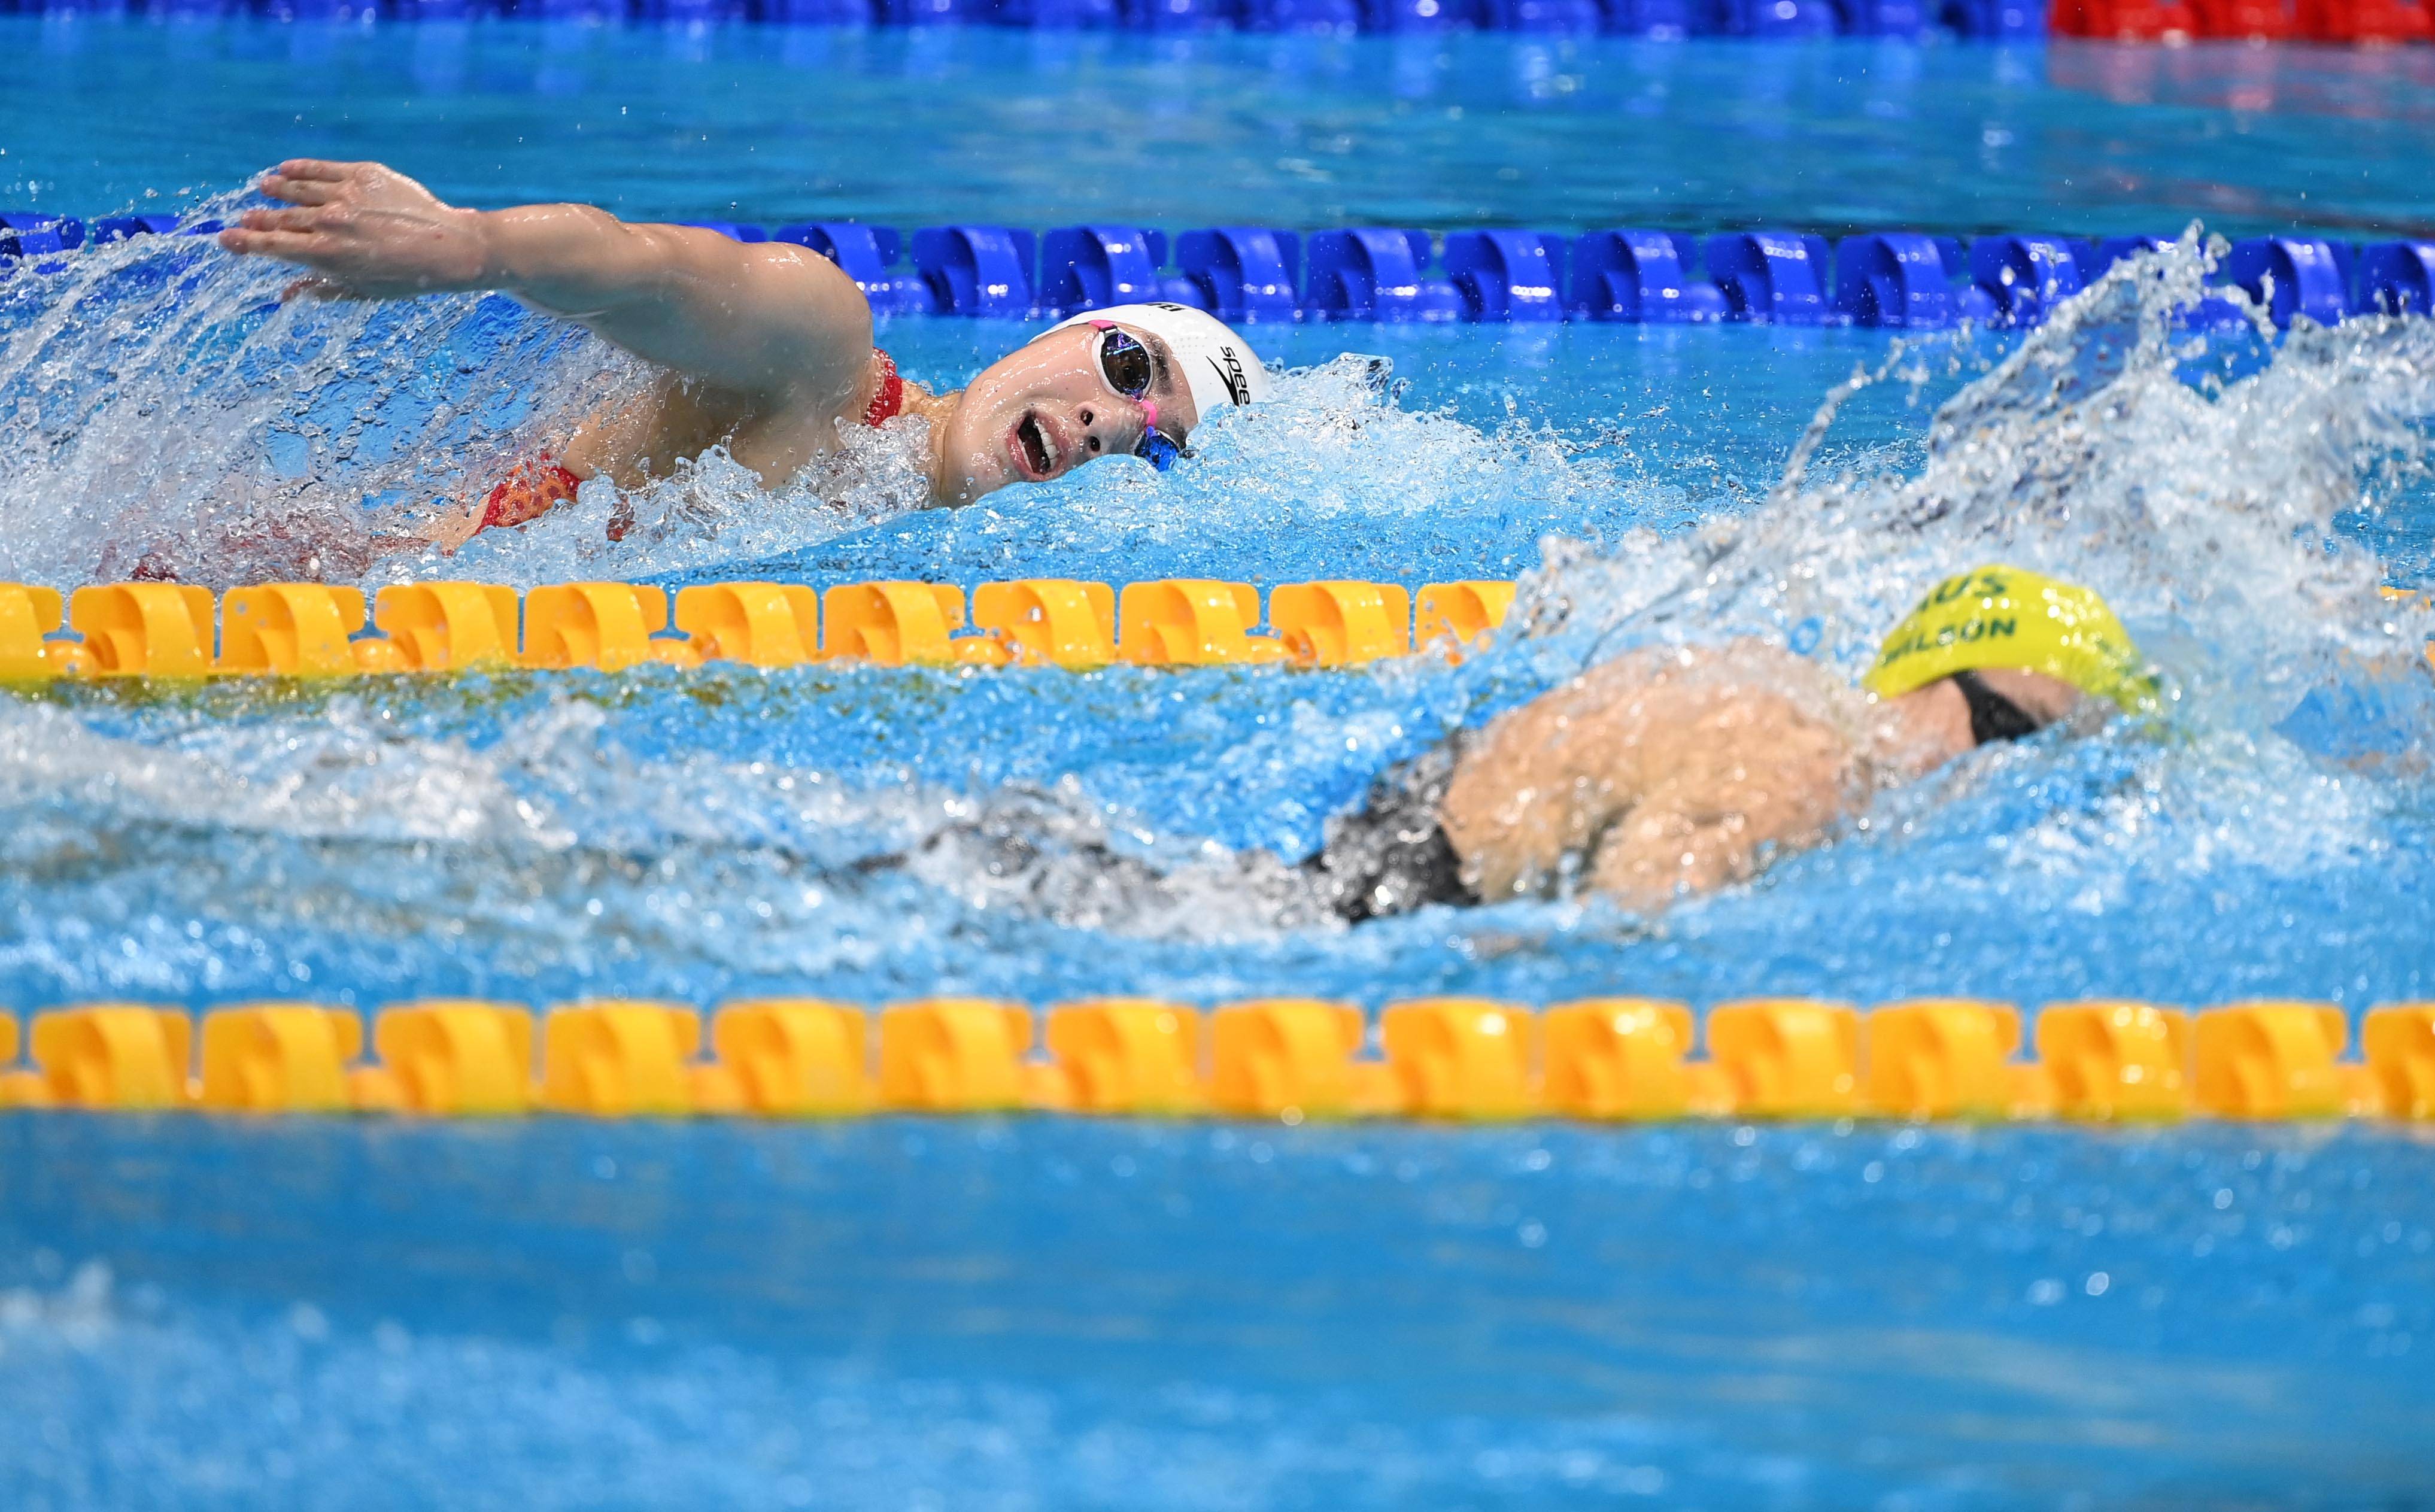 俄罗斯男排奥运夺冠_俄罗斯游泳比赛夺冠消息_奥运会中国游泳夺冠视频